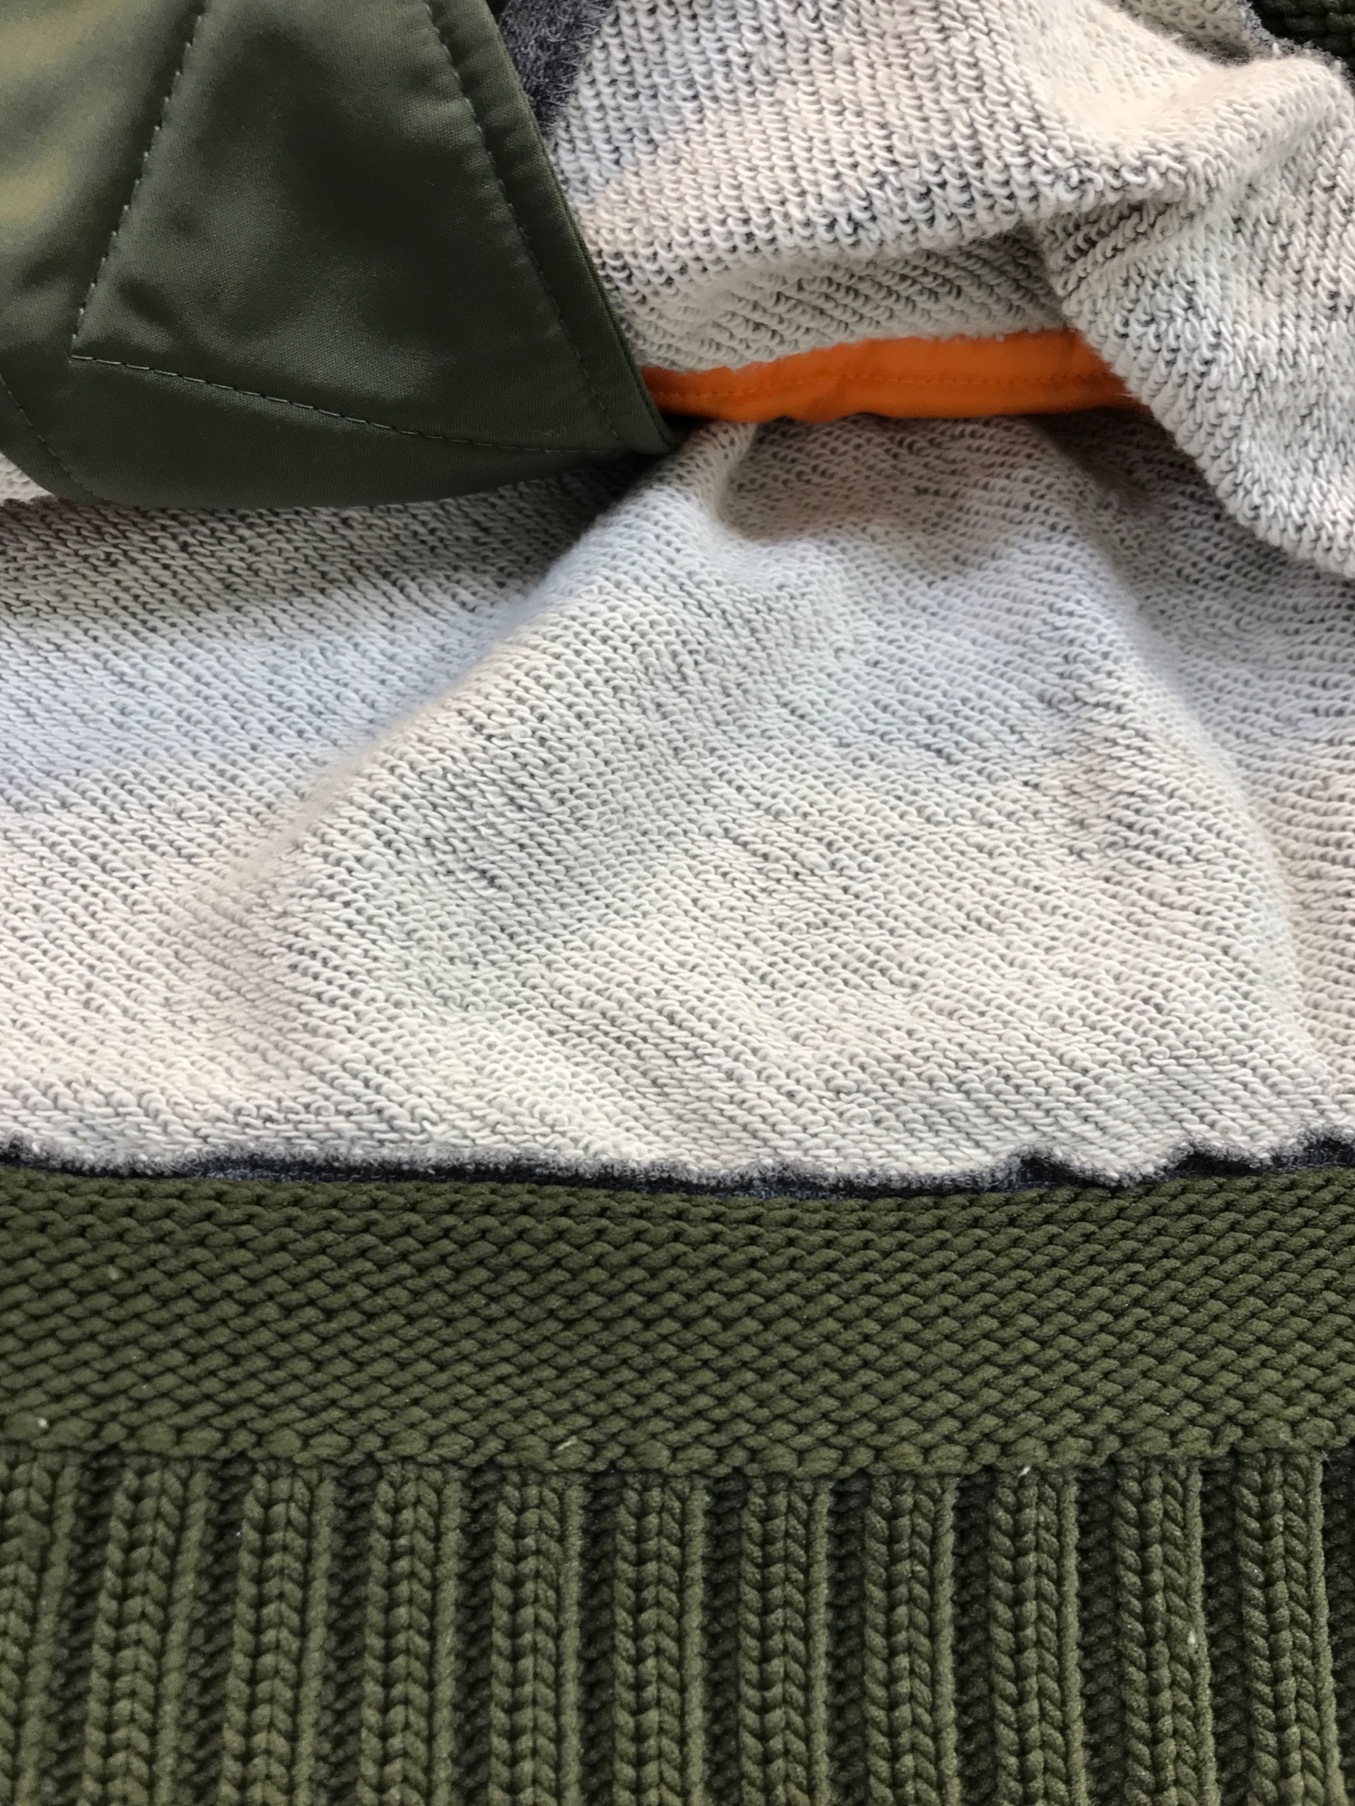 UNDERCOVER (アンダーカバー) スウェット切替裾リブMA-1ジャケット グリーン×グレー サイズ:3